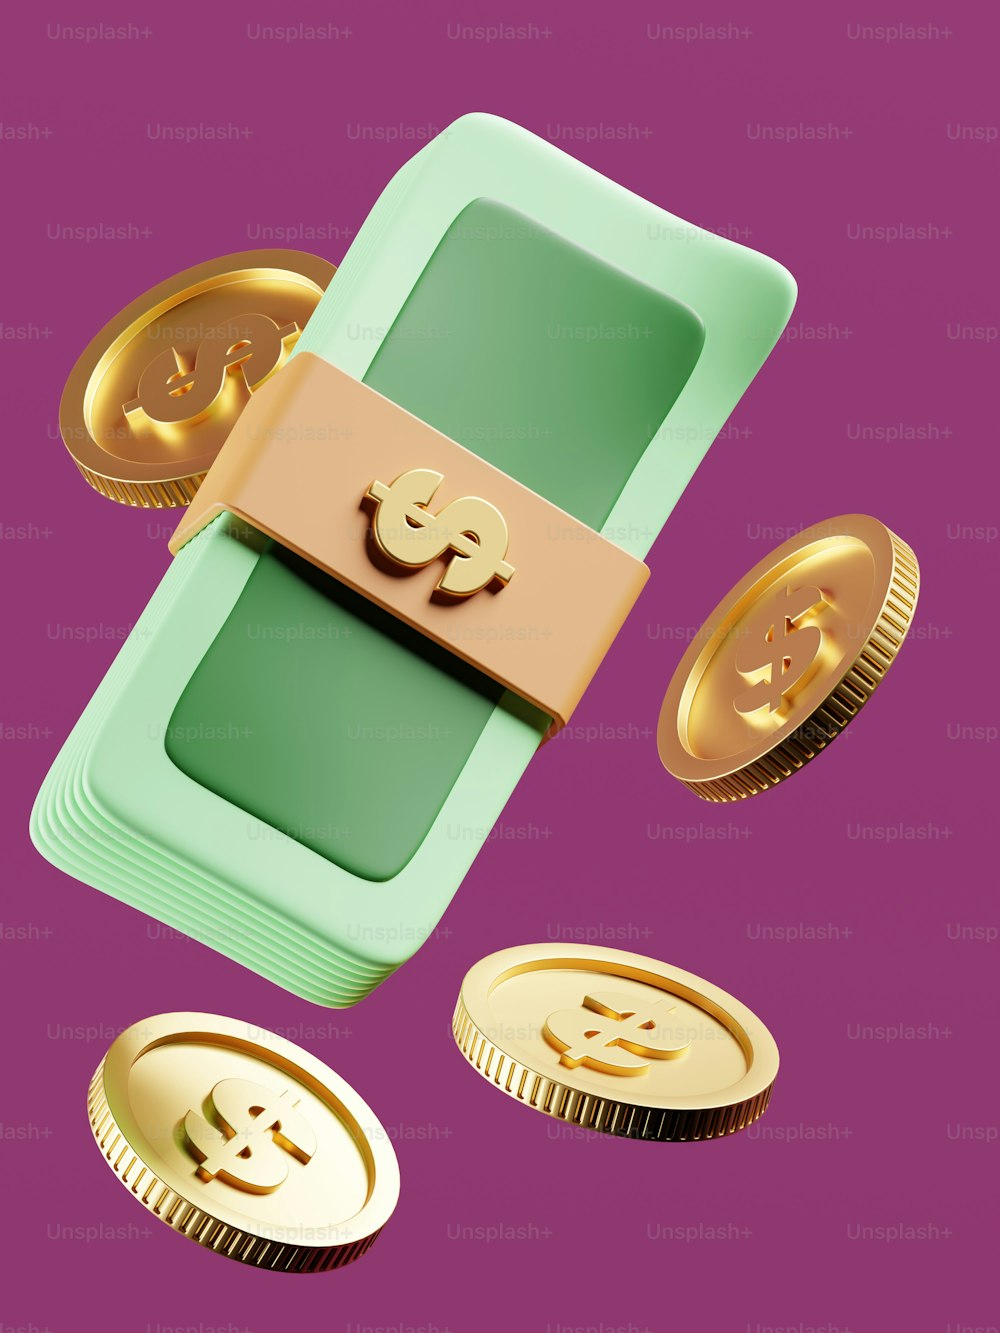 Un boîtier vert avec un bitcoin en or par-dessus